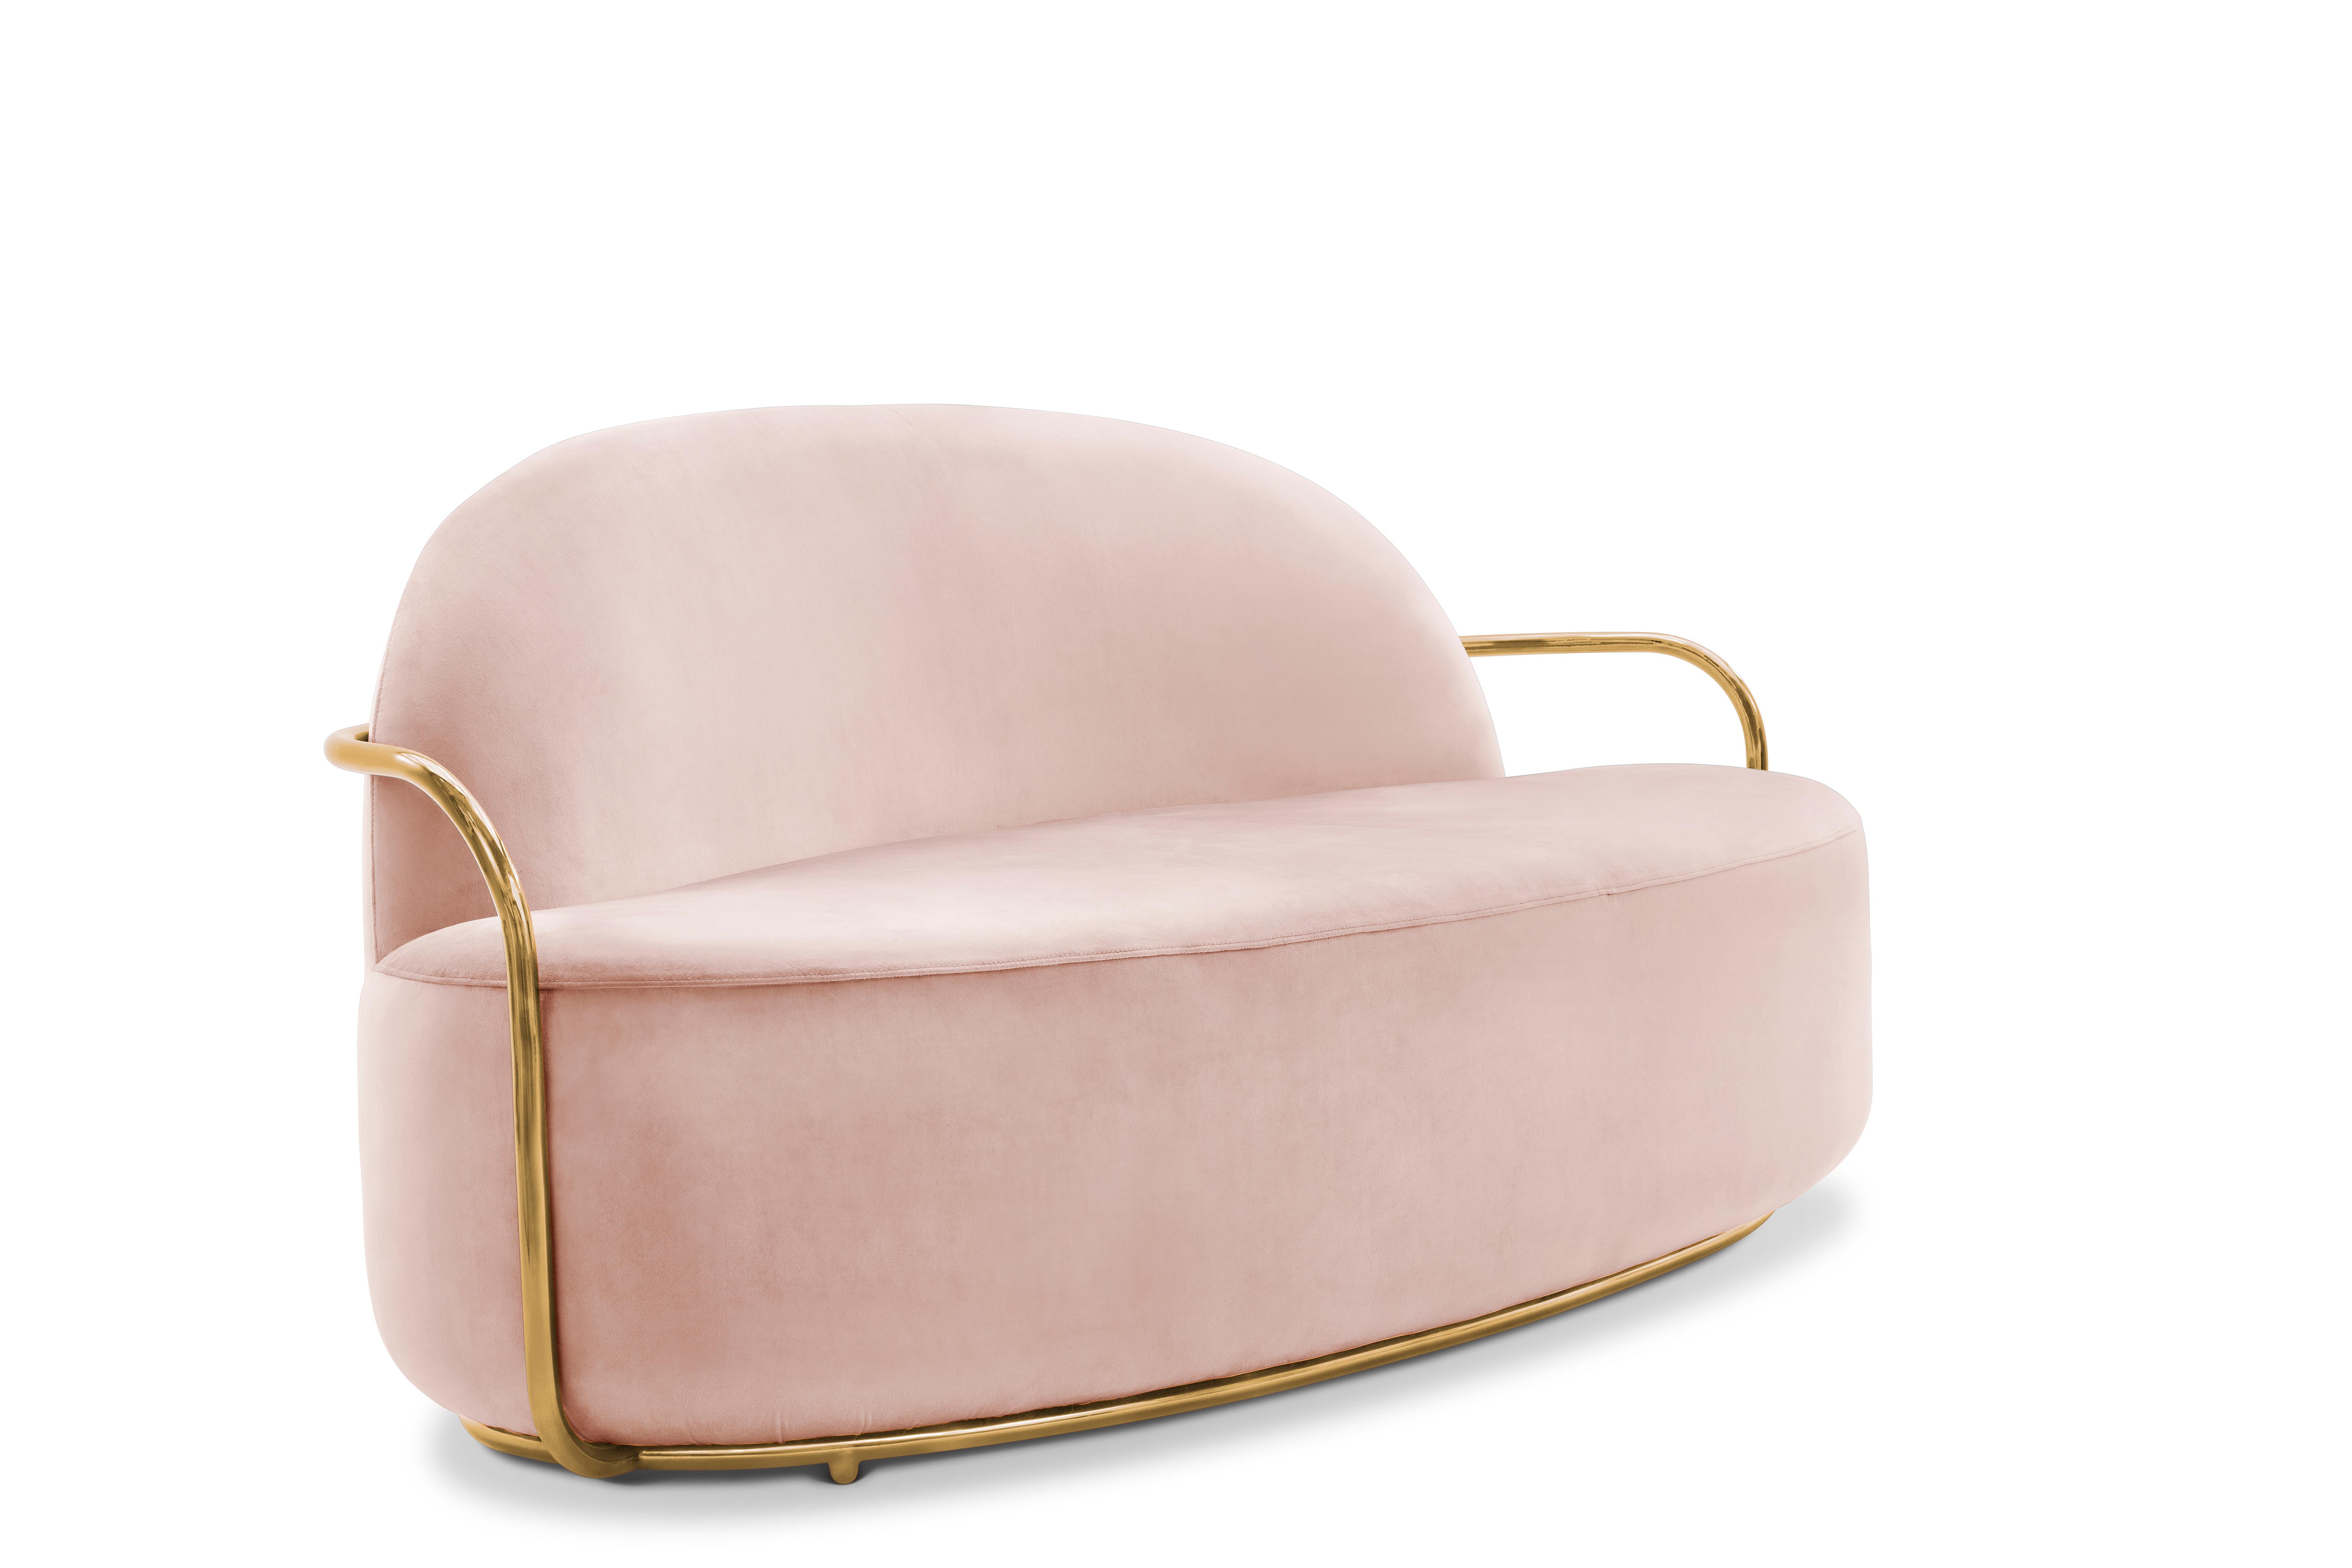 Le canapé Orion 3 places en velours rose pelucheux et accoudoirs dorés de NIKA ZUPANC fait bonne figure avec son velours rose pâle et ses accoudoirs en métal richement doré.

Nika ZUPANC, designer slovène de renom, n'hésite jamais à redéfinir le